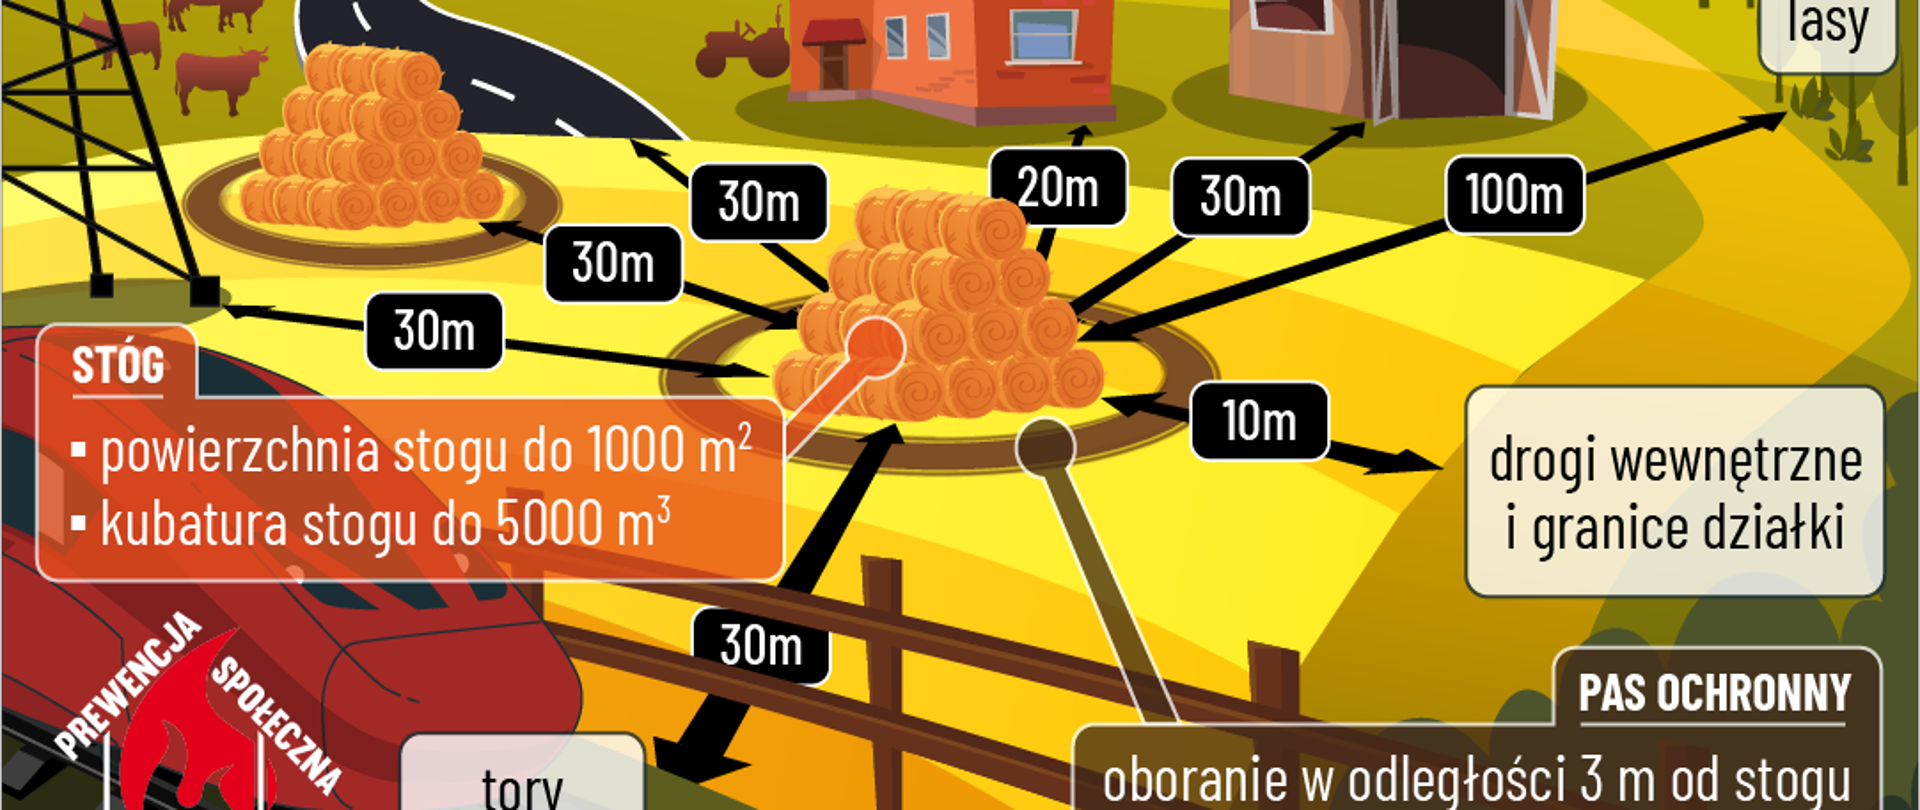 Na zdjęciu widać grafikę przedstawiającą odległości jakie powinno zachować się podczas usytuowania sterty i stogów.